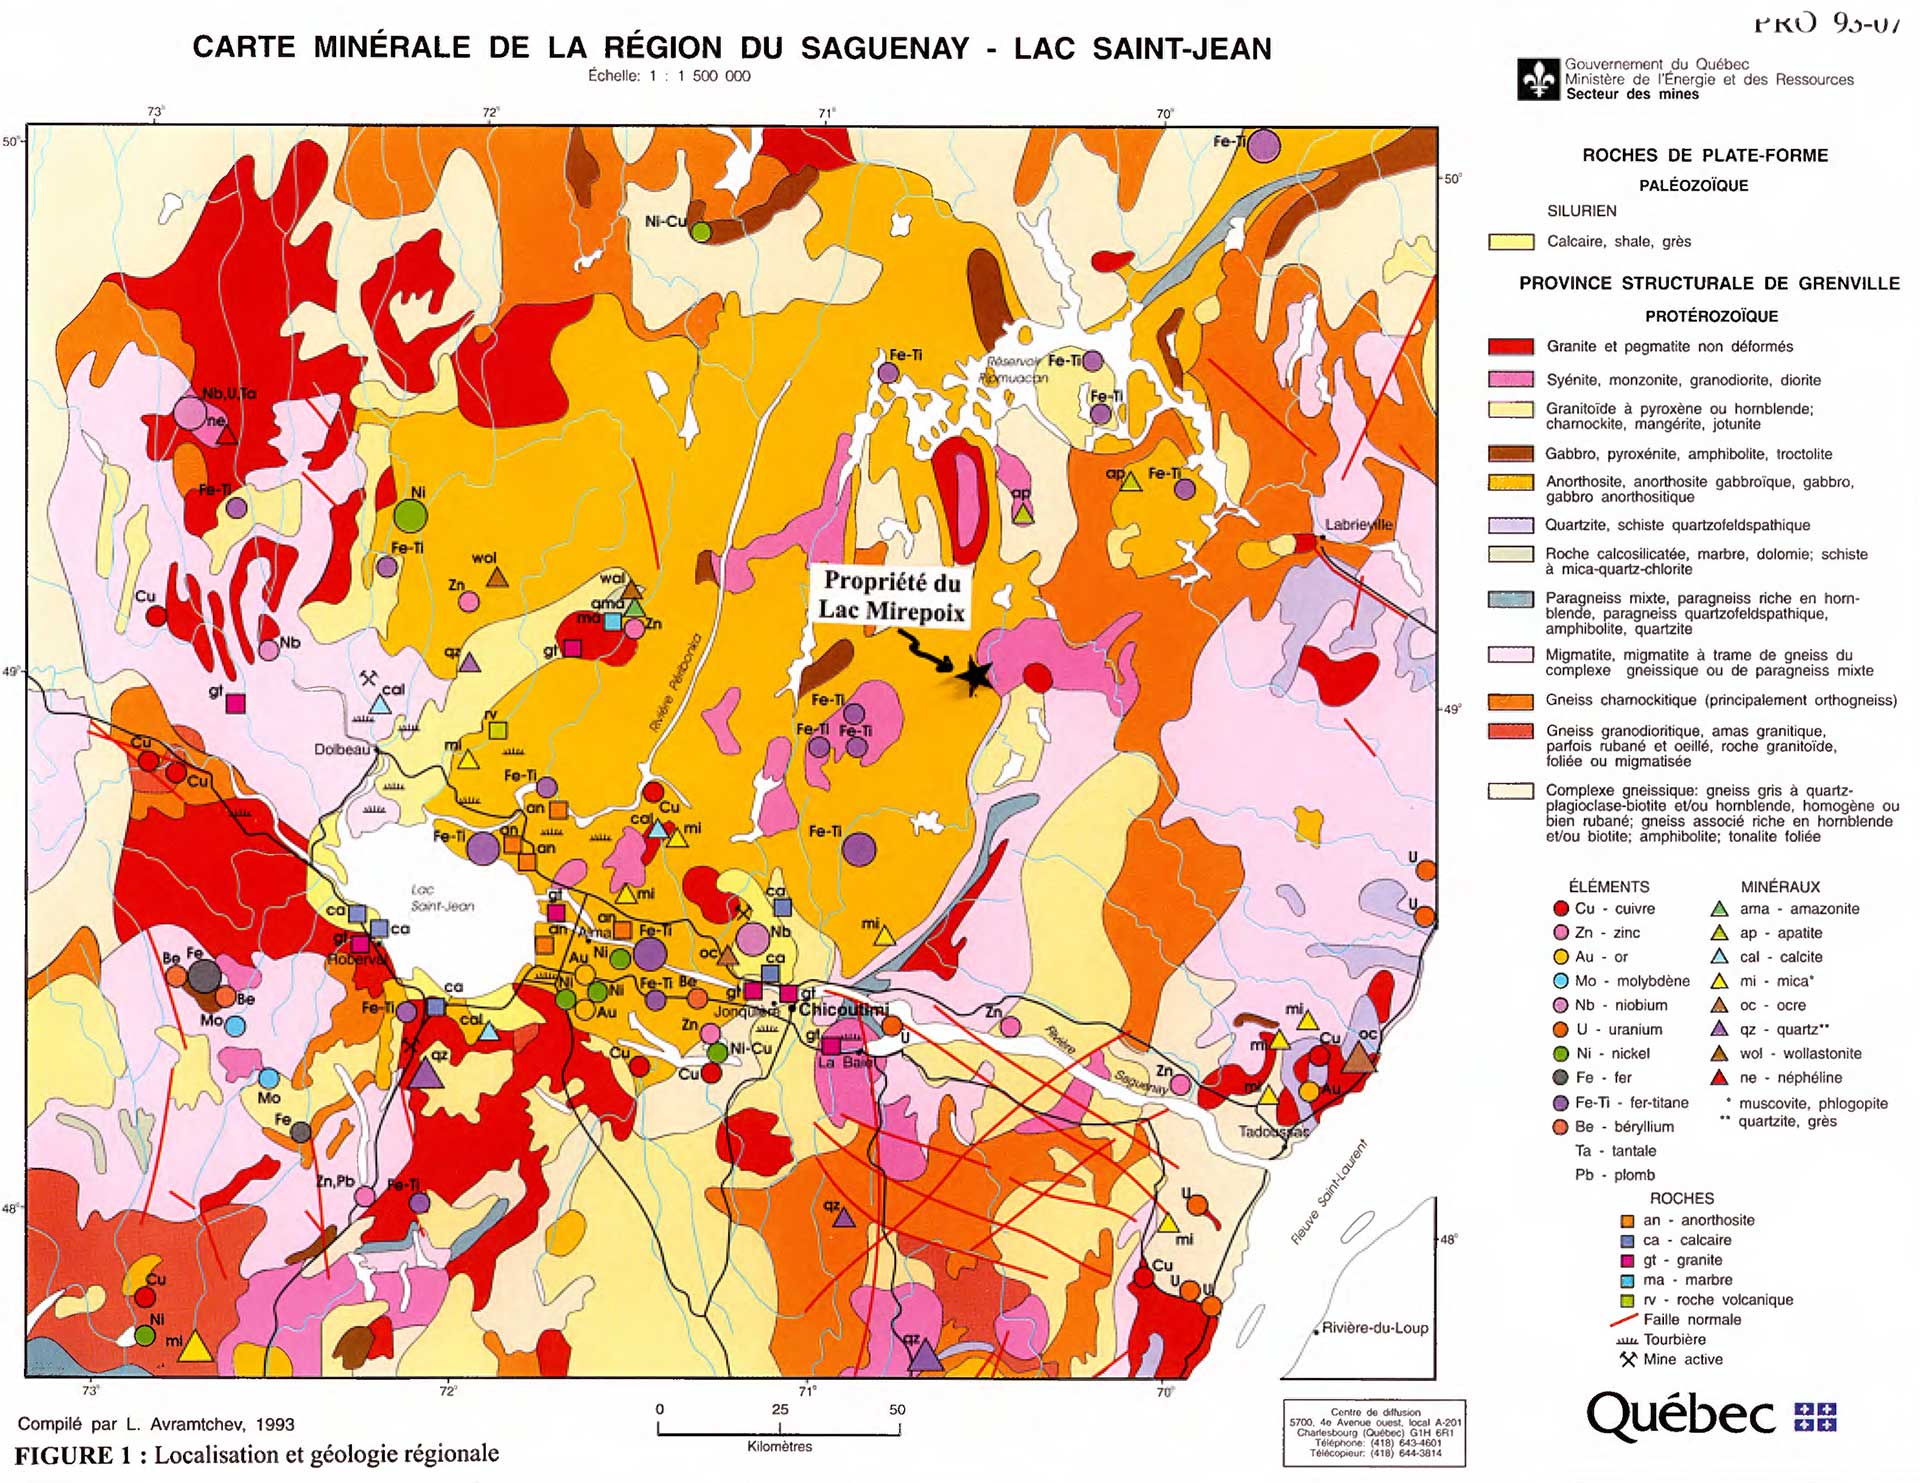 Carte-minerale-region-du-Saguenay-Lac-Saint-Jean